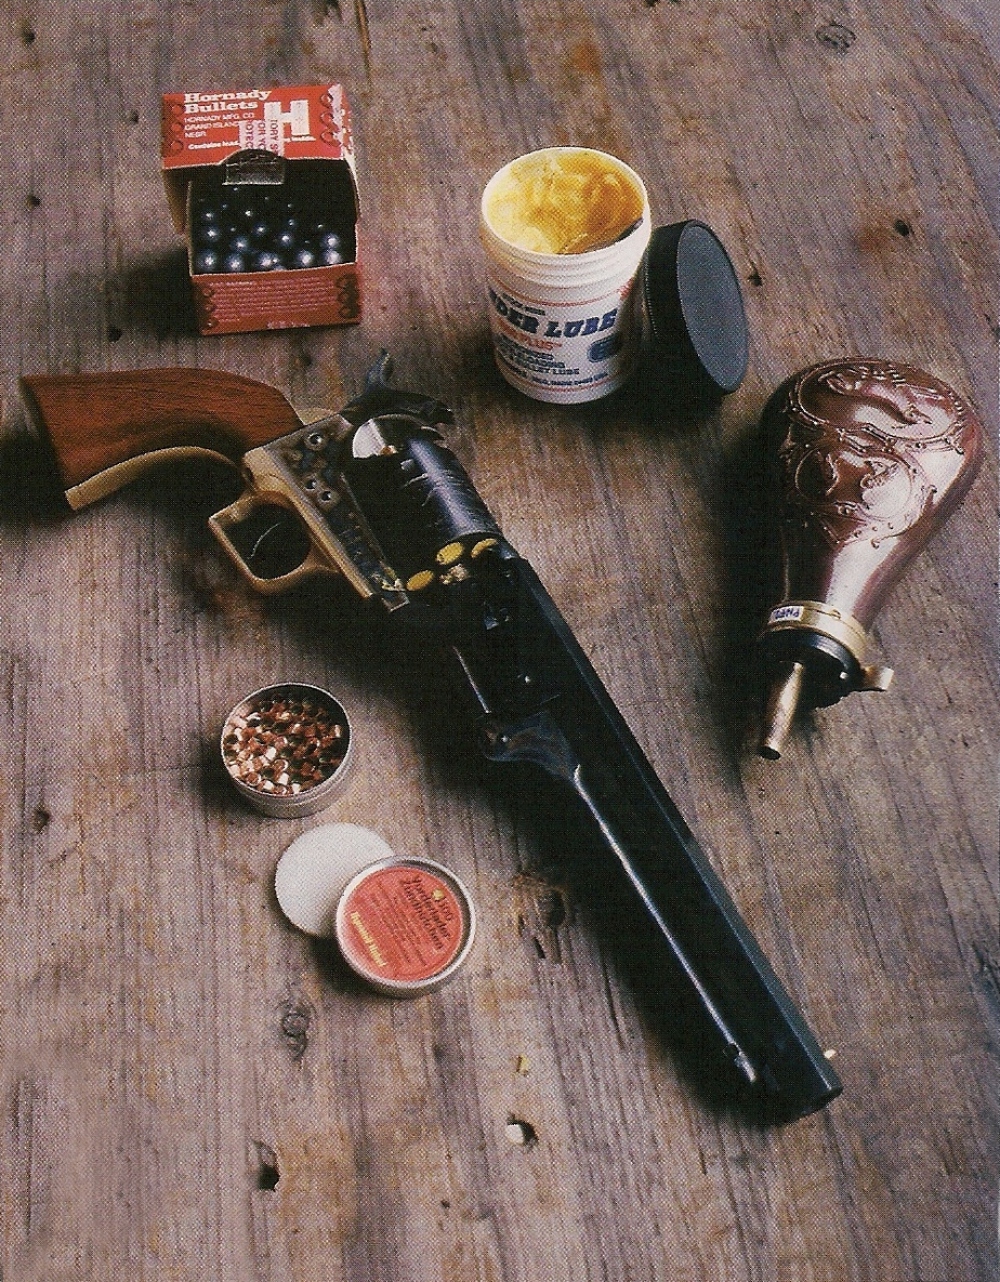 La réplique du Colt modèle 1851 Navy « Squareback », qui vient d'être chargée, est accompagnée des ingrédients indispensables à son utilisation au stand : poudre, balles, graisse et amorces.